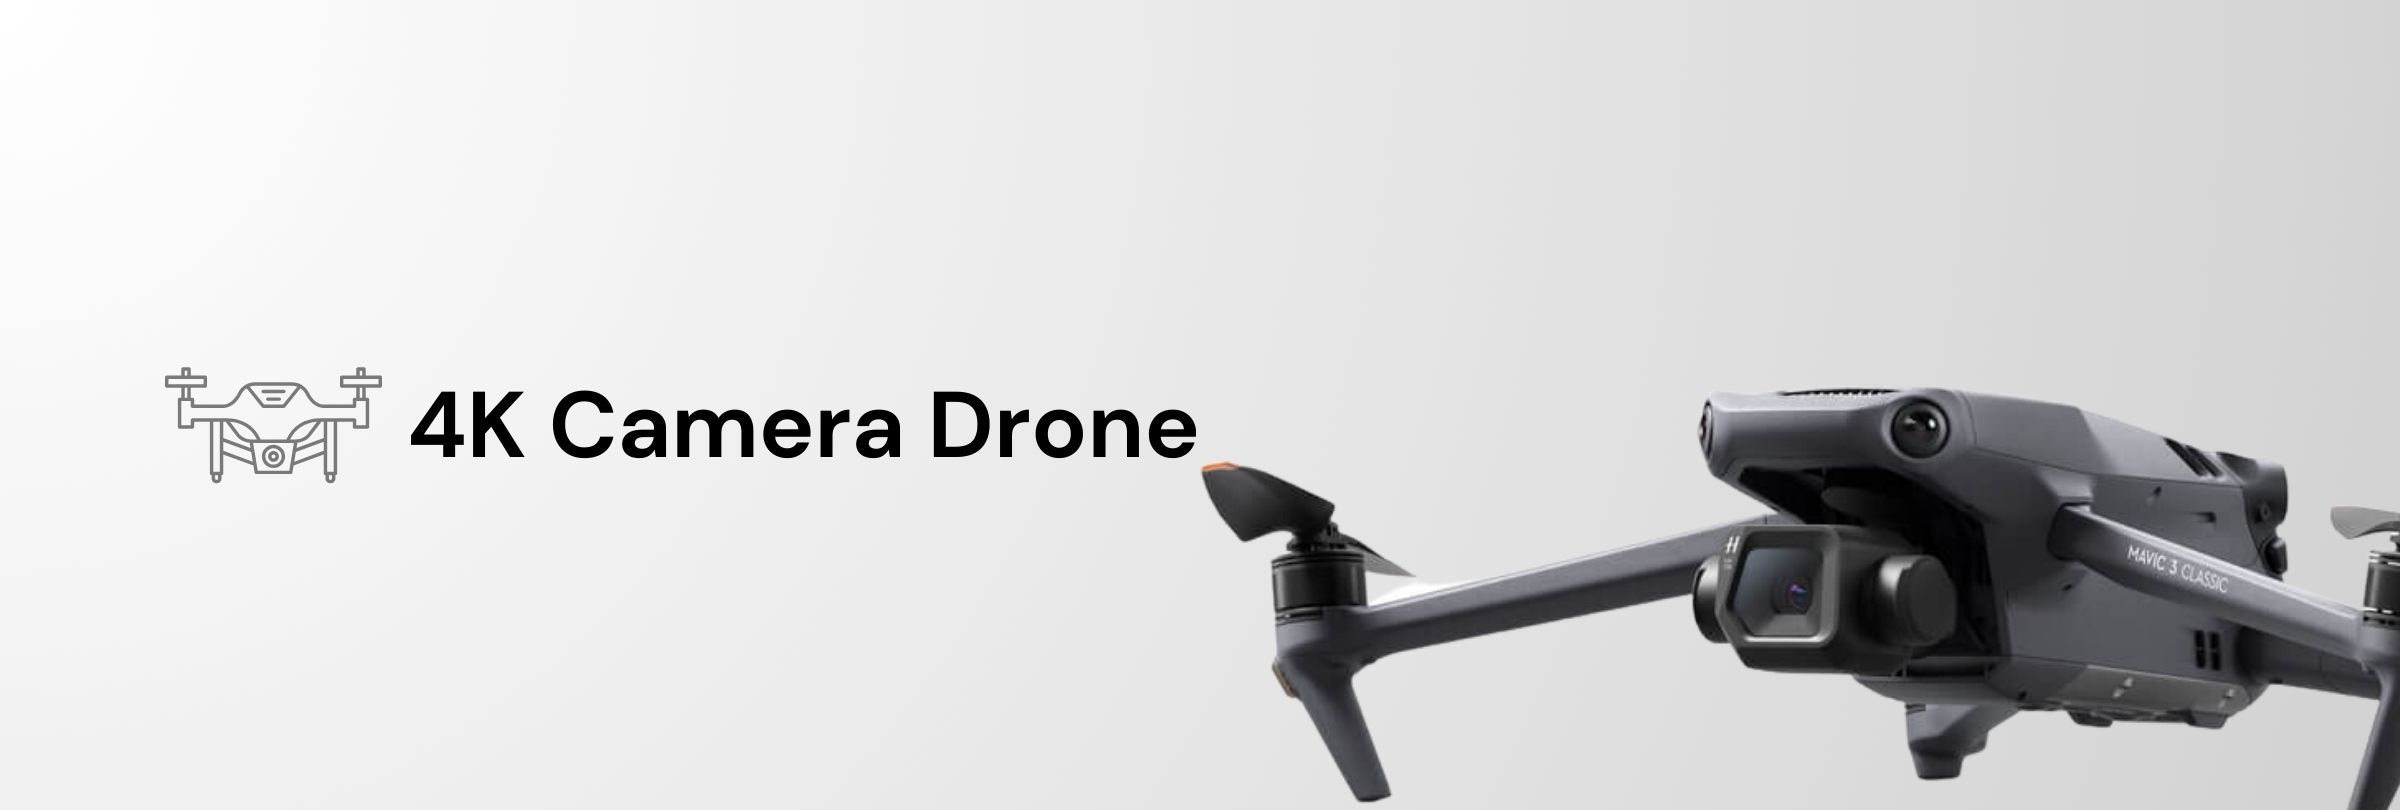 4K Camera Drone